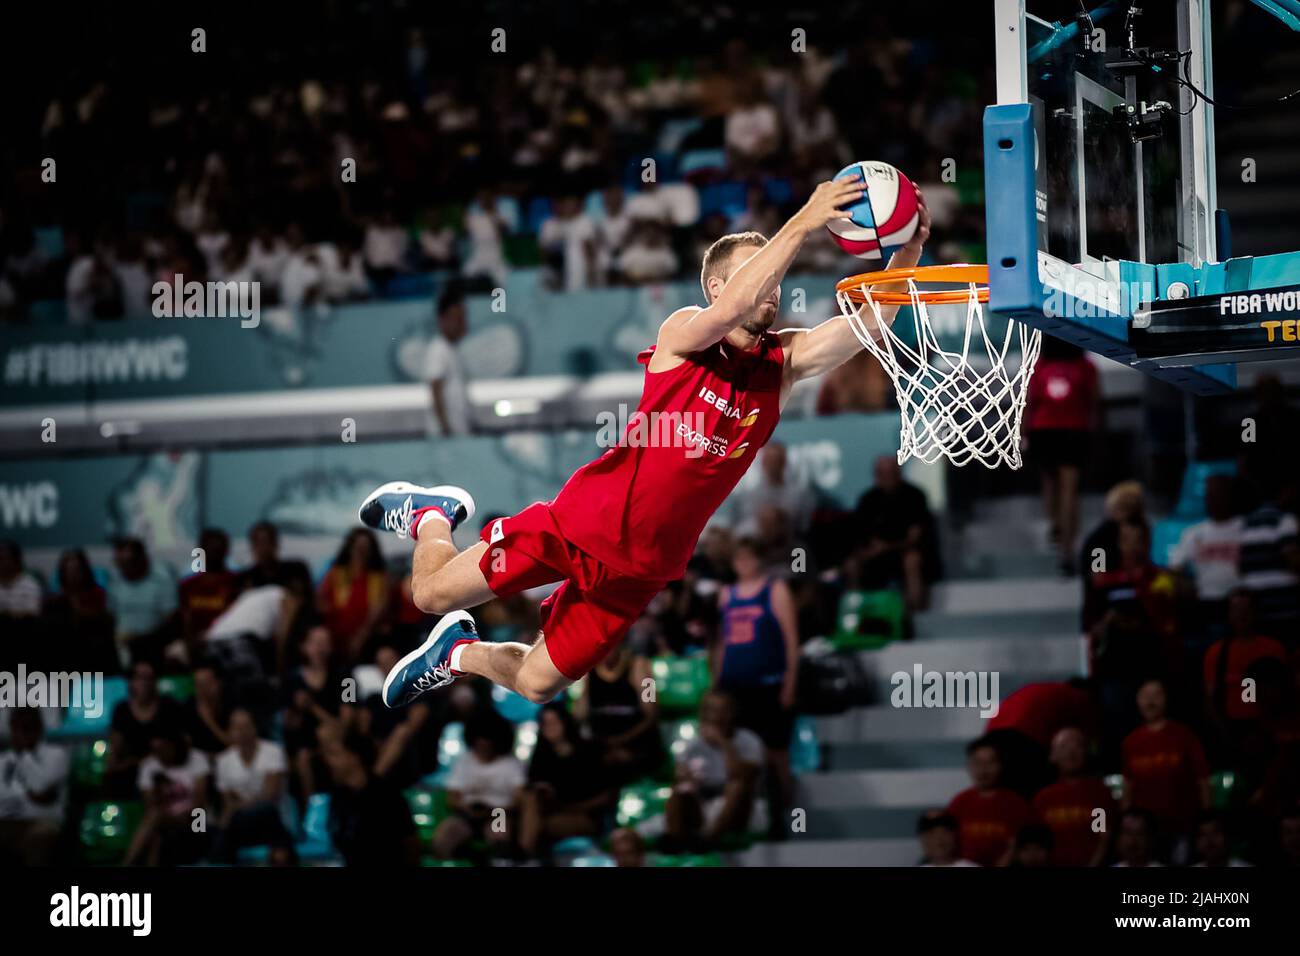 Ténérife, Espagne, 26 septembre 2018: Un joueur de basket-ball qui fait un dunk lors d'un spectacle de basket-ball à la FIBA Basketball WWC 2018 Banque D'Images